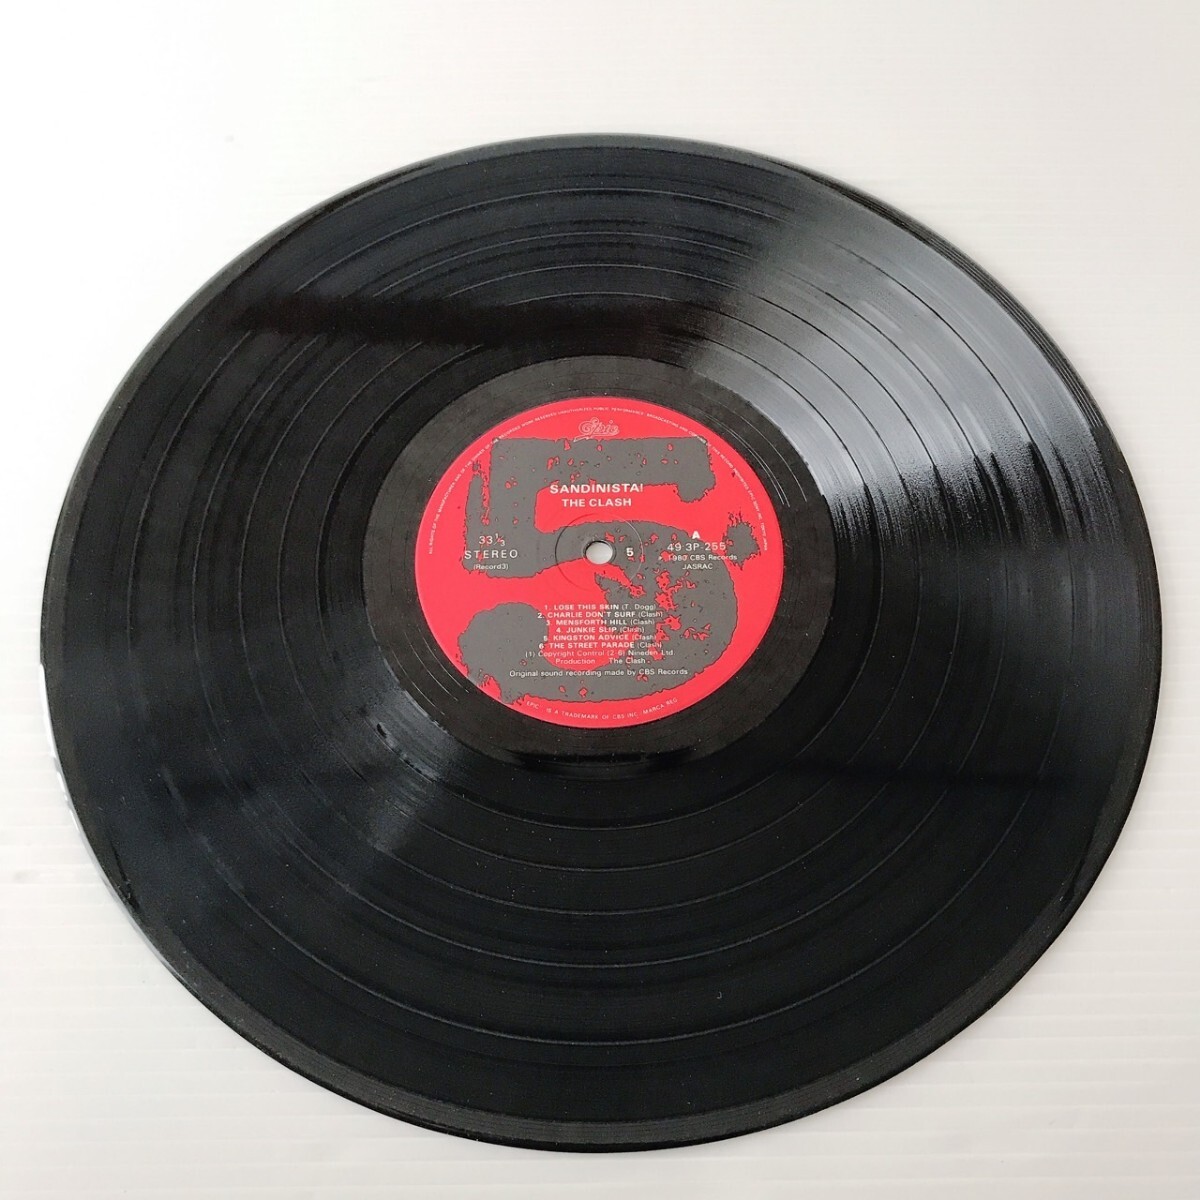 レコード LP SANDINISTA THE CLASH サンディニスタ クラッシュ 3枚組 洋楽 ロック ポップス_画像8